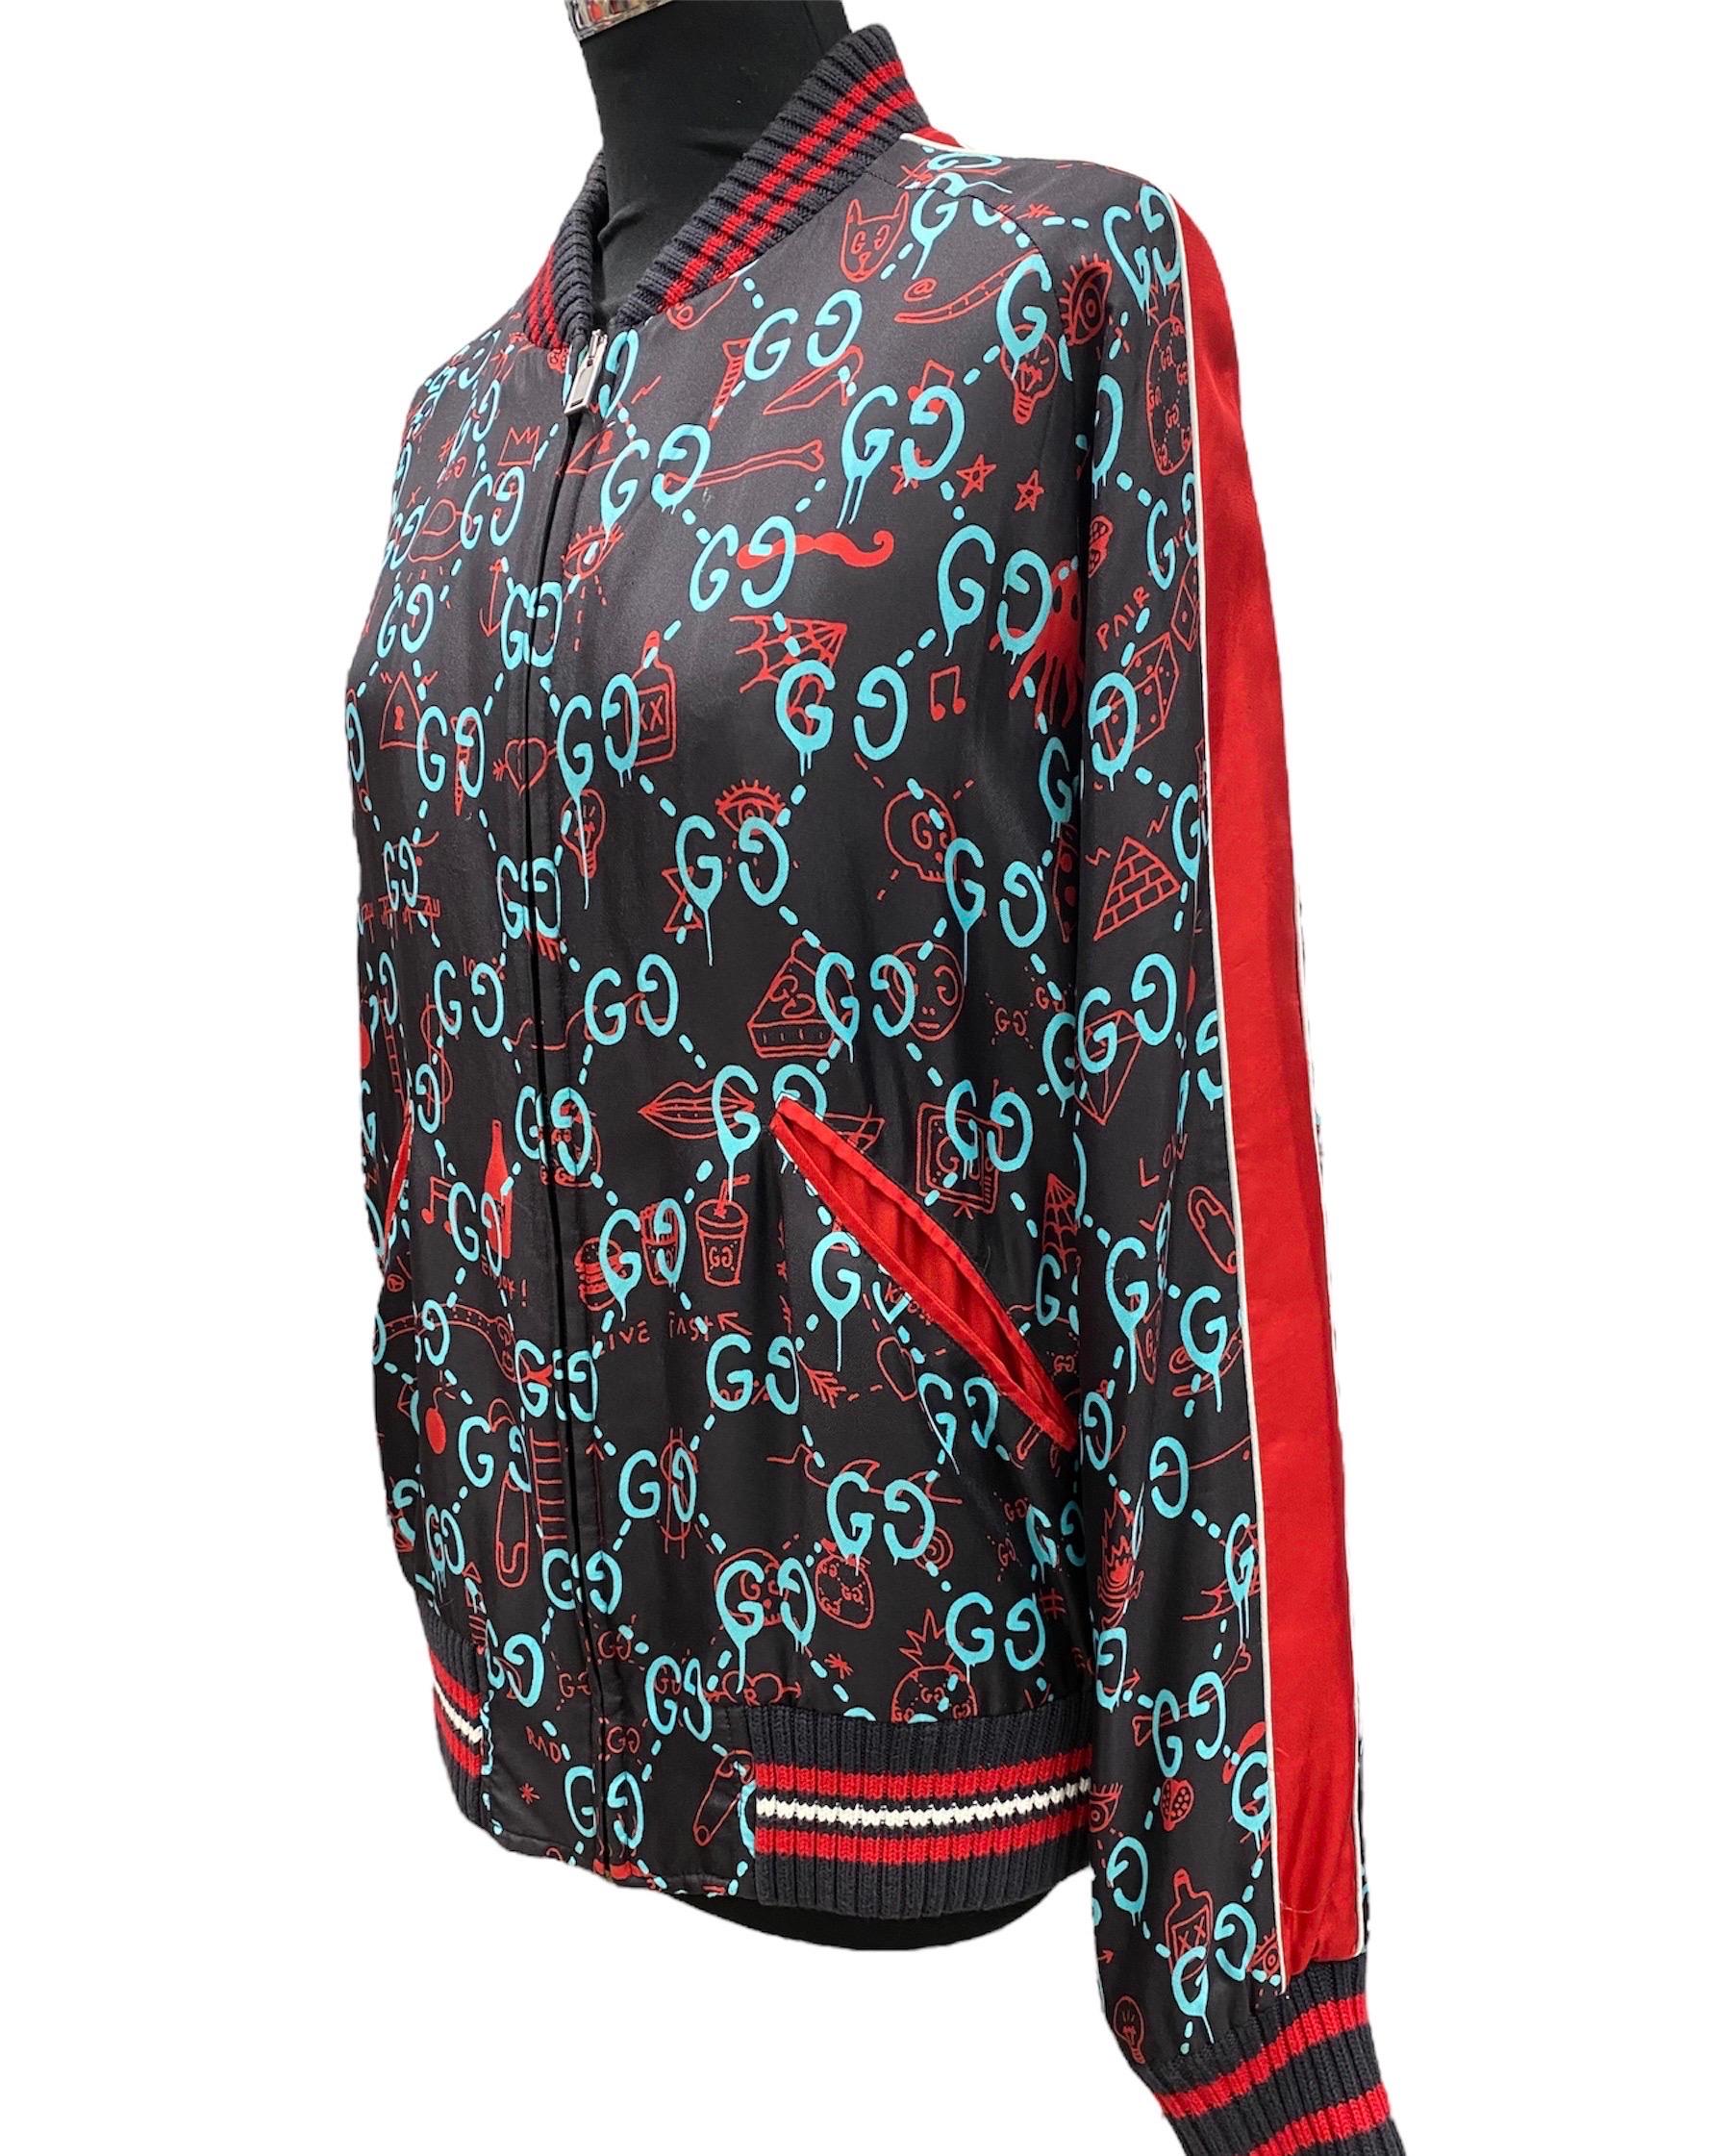 Leichte Jacke von Gucci aus schwarzem Nylon mit GG-Muster, mit gestricktem Kragen und Manschetten.

Größe 48. Mit Reißverschluss, Seitentaschen und Innentaschen. Es scheint unter perfekten Bedingungen zu stehen. Das Produkt wird nicht mehr